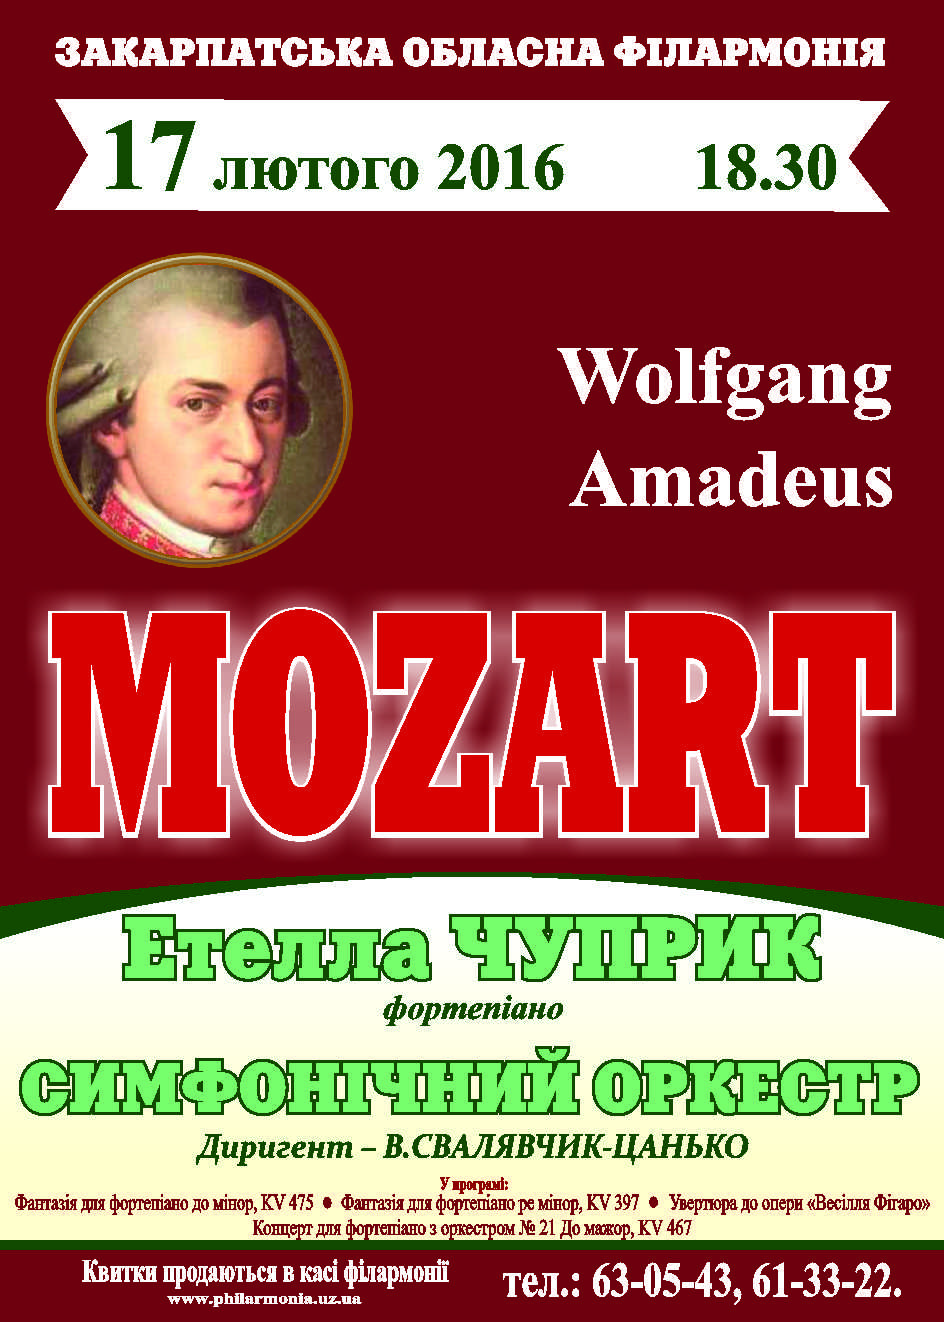 Ювілей Моцарта закарпатські музиканти вшанують концертом